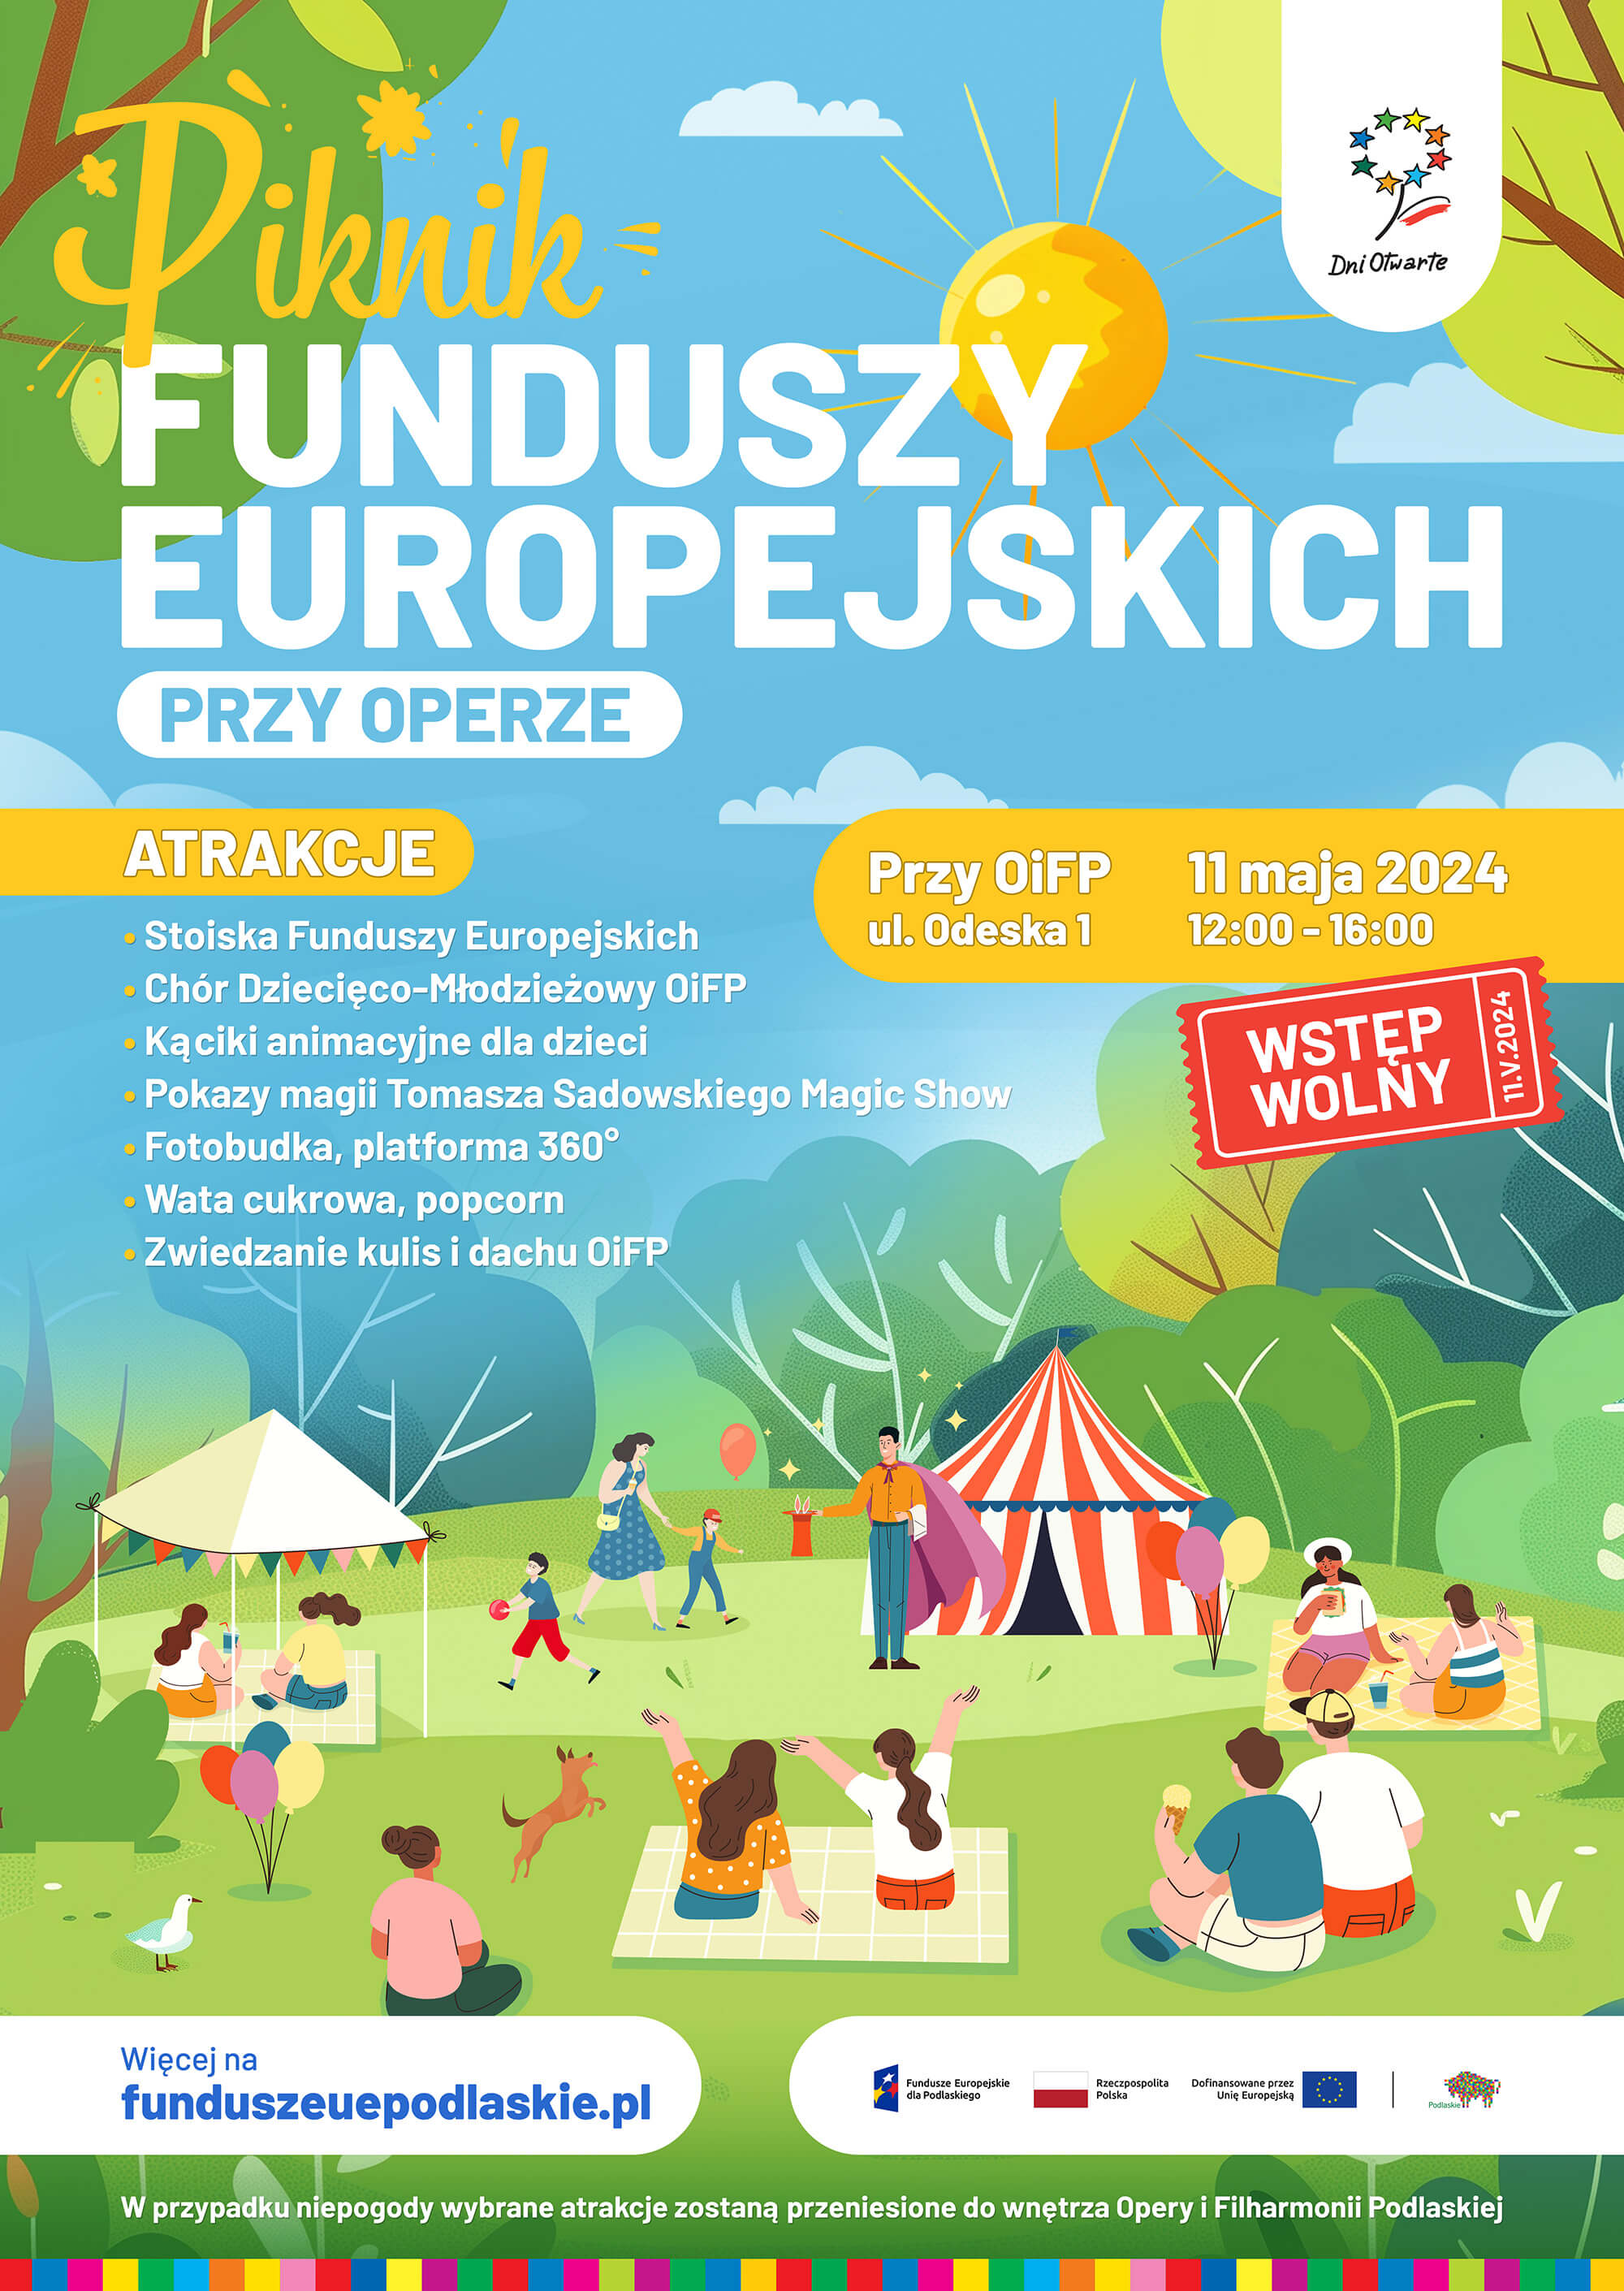 Plakat dotyczący Pikniku Funduszy Europejskich przy Operze